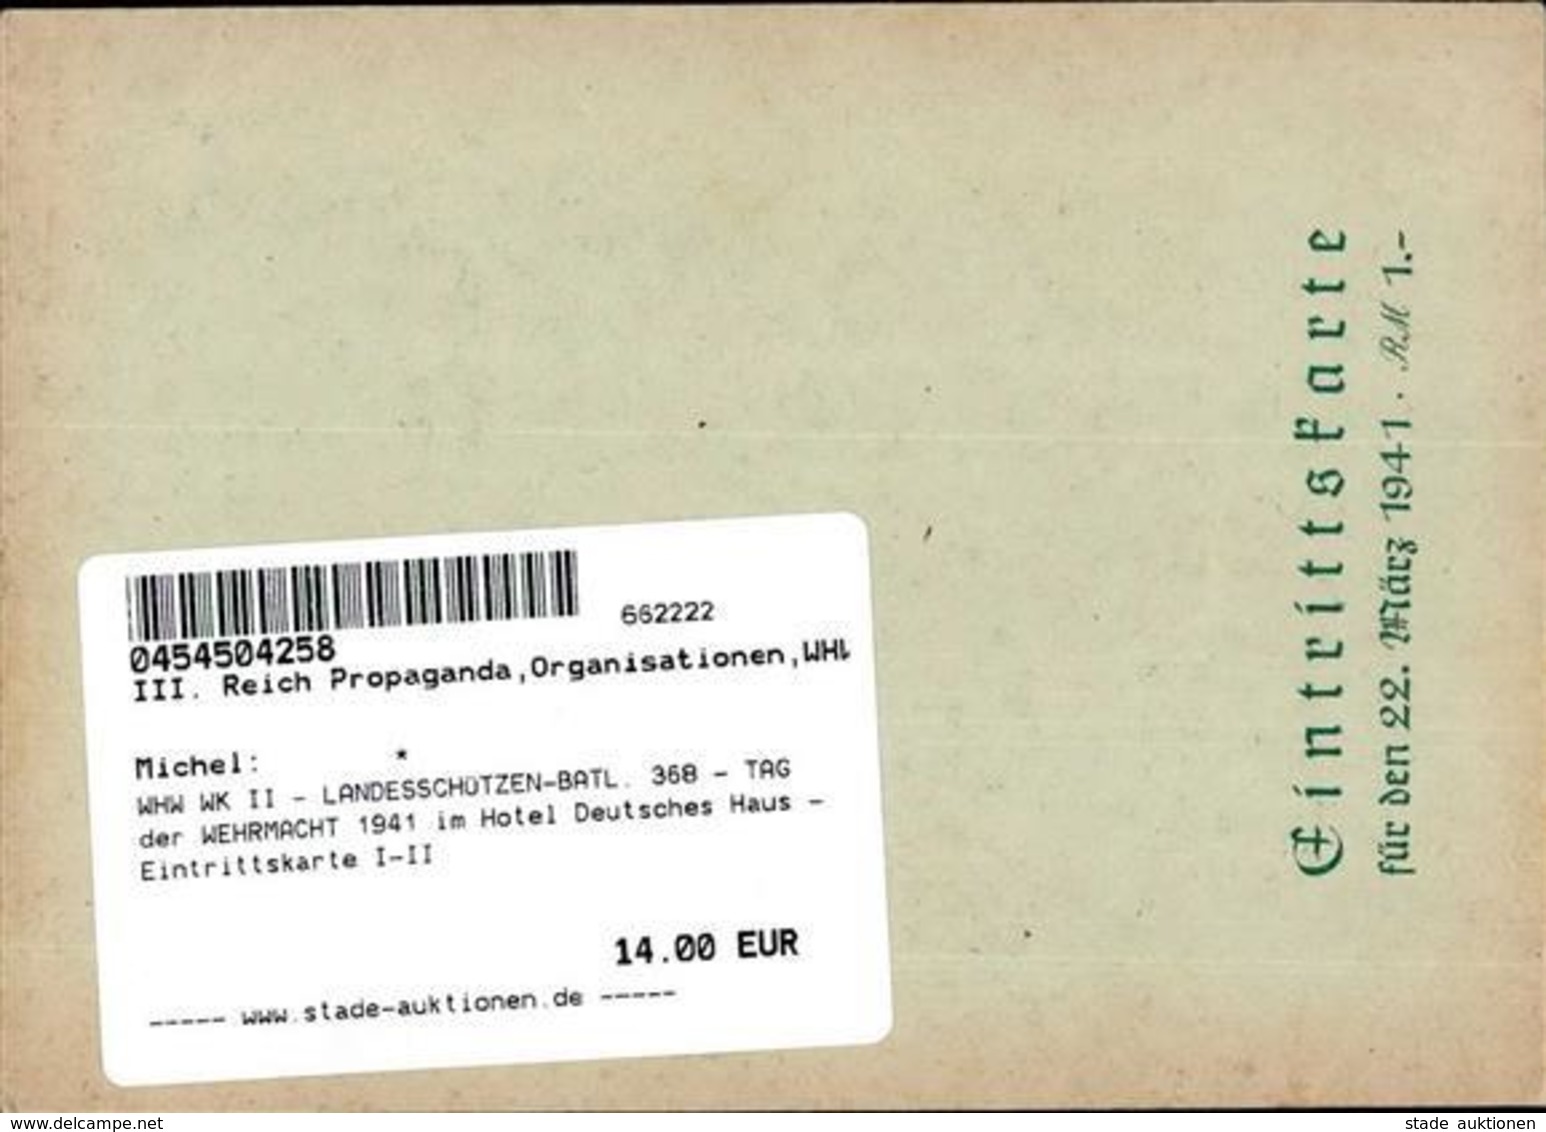 WHW WK II - LANDESSCHÜTZEN-BATL. 368 - TAG Der WEHRMACHT 1941 Im Hotel Deutsches Haus - Eintrittskarte I-II - Guerra 1939-45